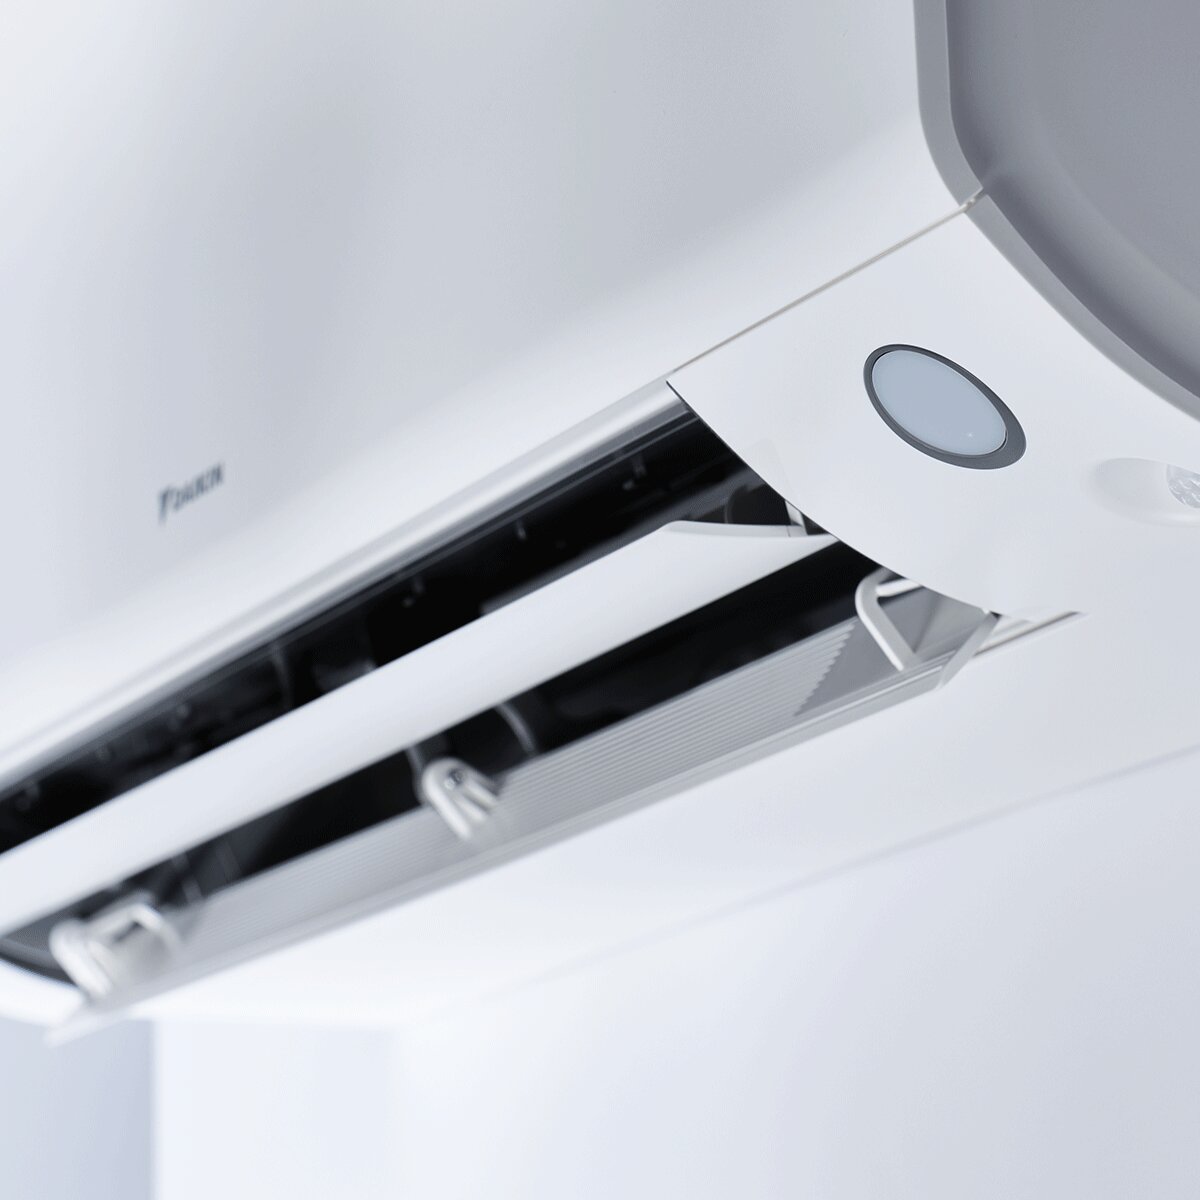 Système de climatisation et d'eau chaude sanitaire double split Daikin Multi+ - Unités intérieures Perfera All Seasons 9000+9000 BTU - Réservoir 120 l